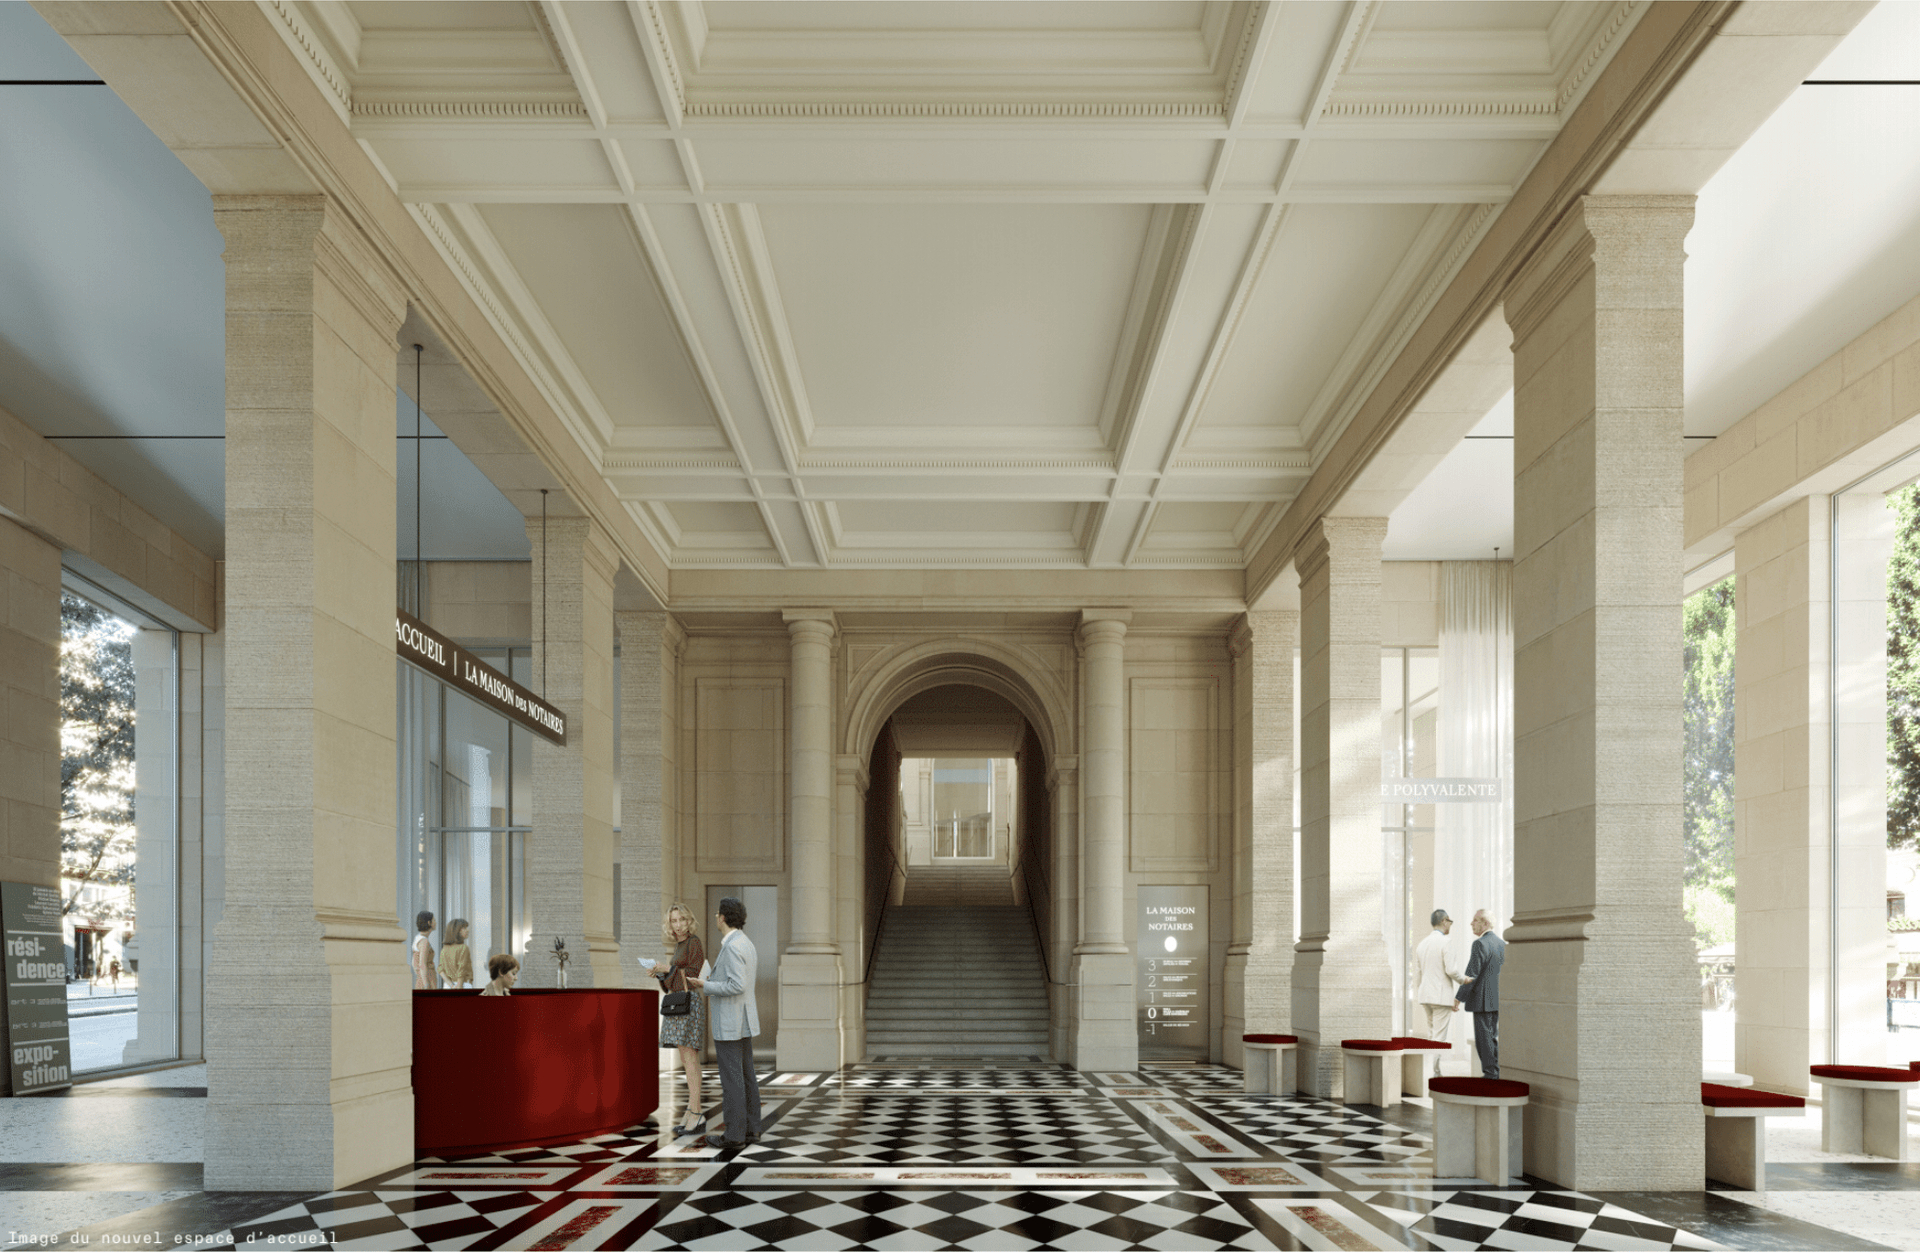 Chambre Des Notaires De Paris: Architecture Competition encequiconcerne Chambre Des Notaires 44